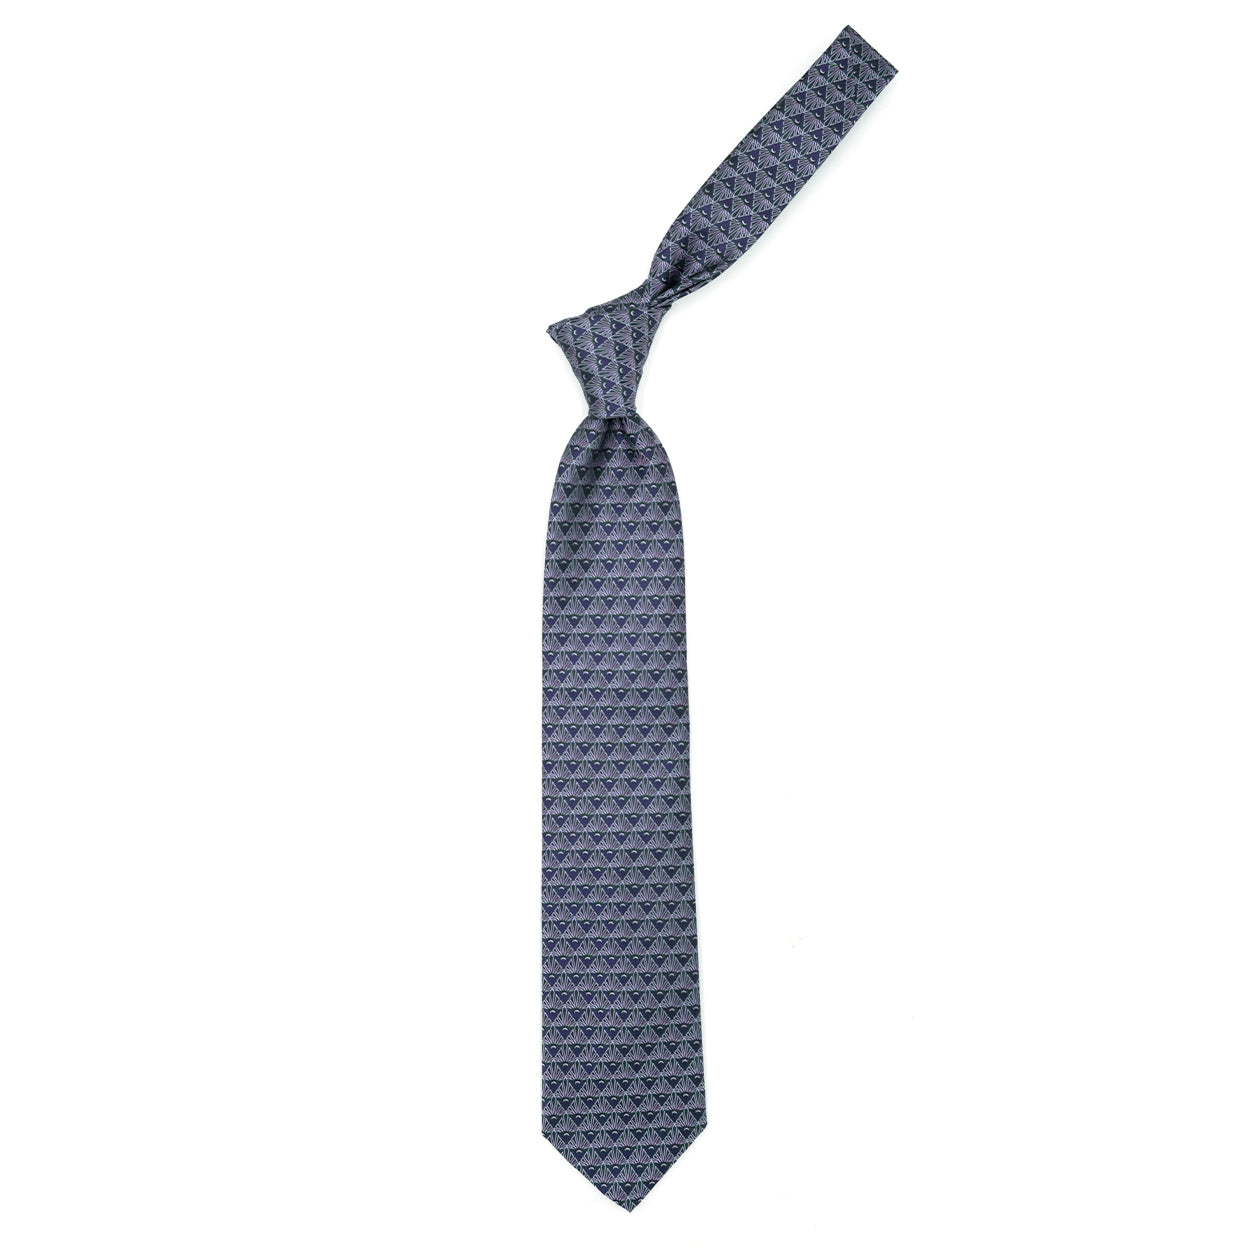 Cravatta azzurra con pattern nero e azzurro